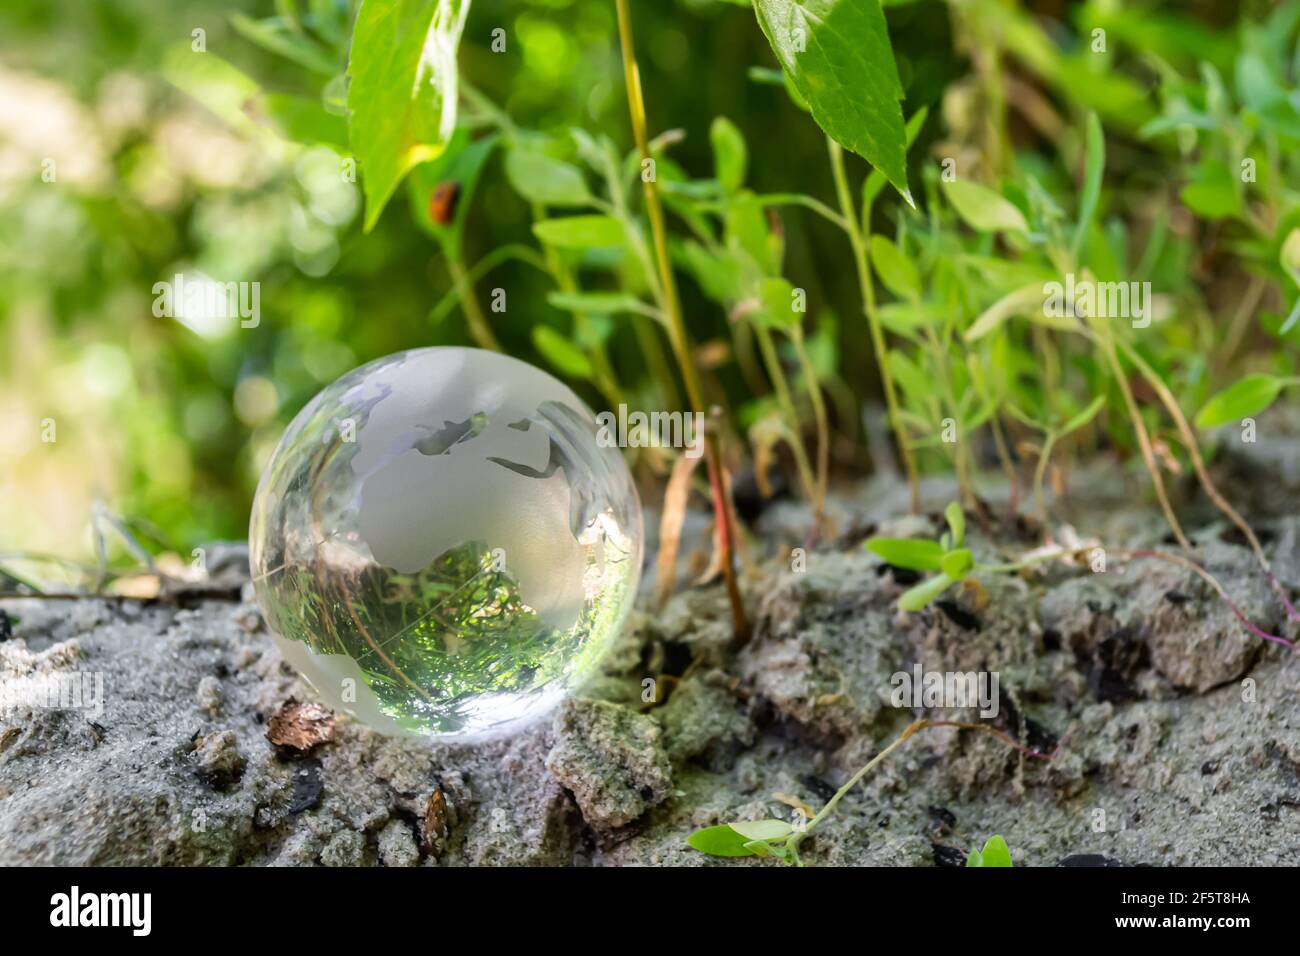 Boule de verre sur le sable dans l'herbe verte. Concept de l'environnement, protection de la nature Banque D'Images